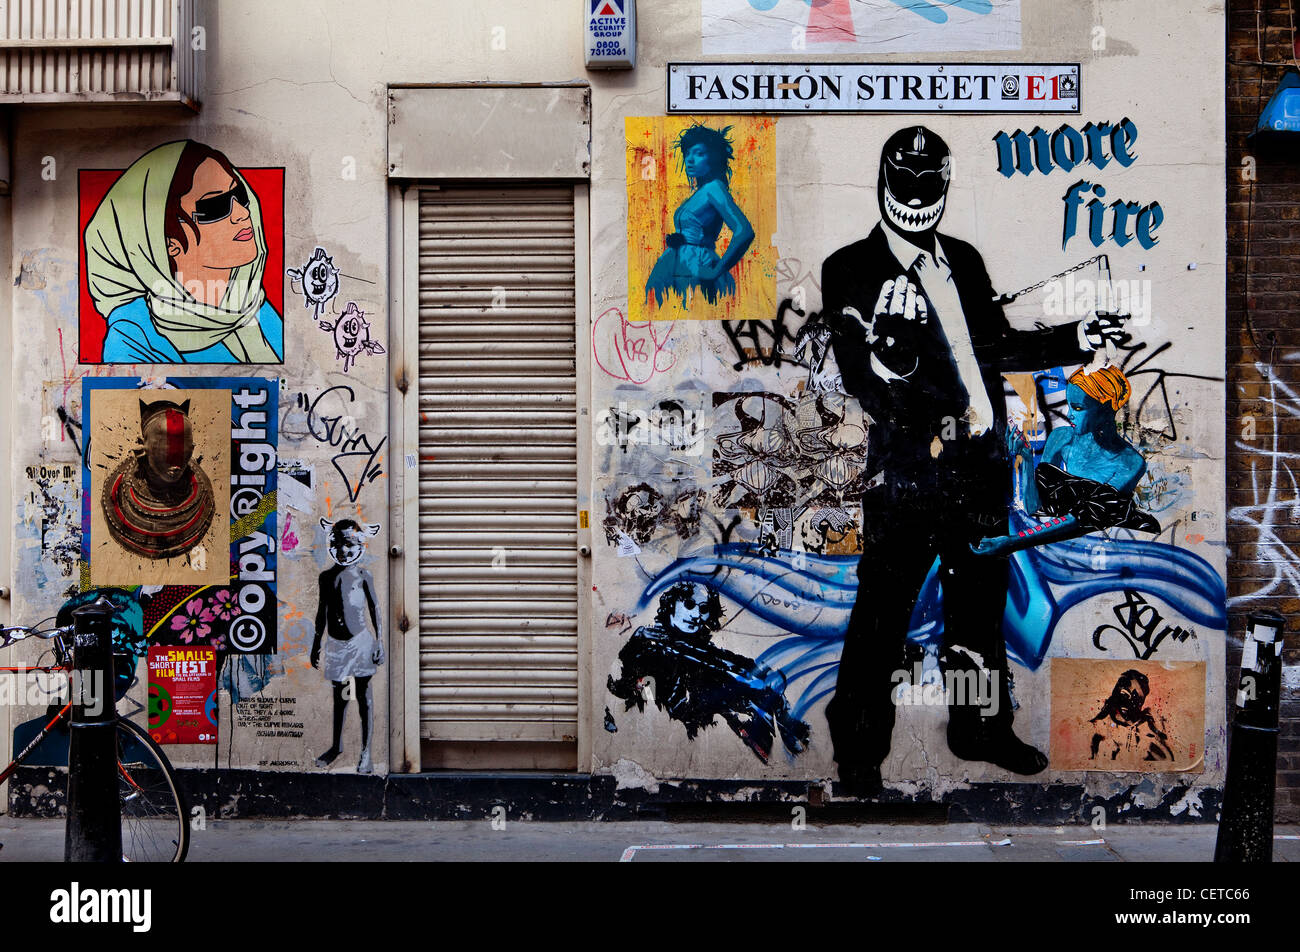 Graffiti en la calle de moda en el moderno East End de Londres. Foto de stock